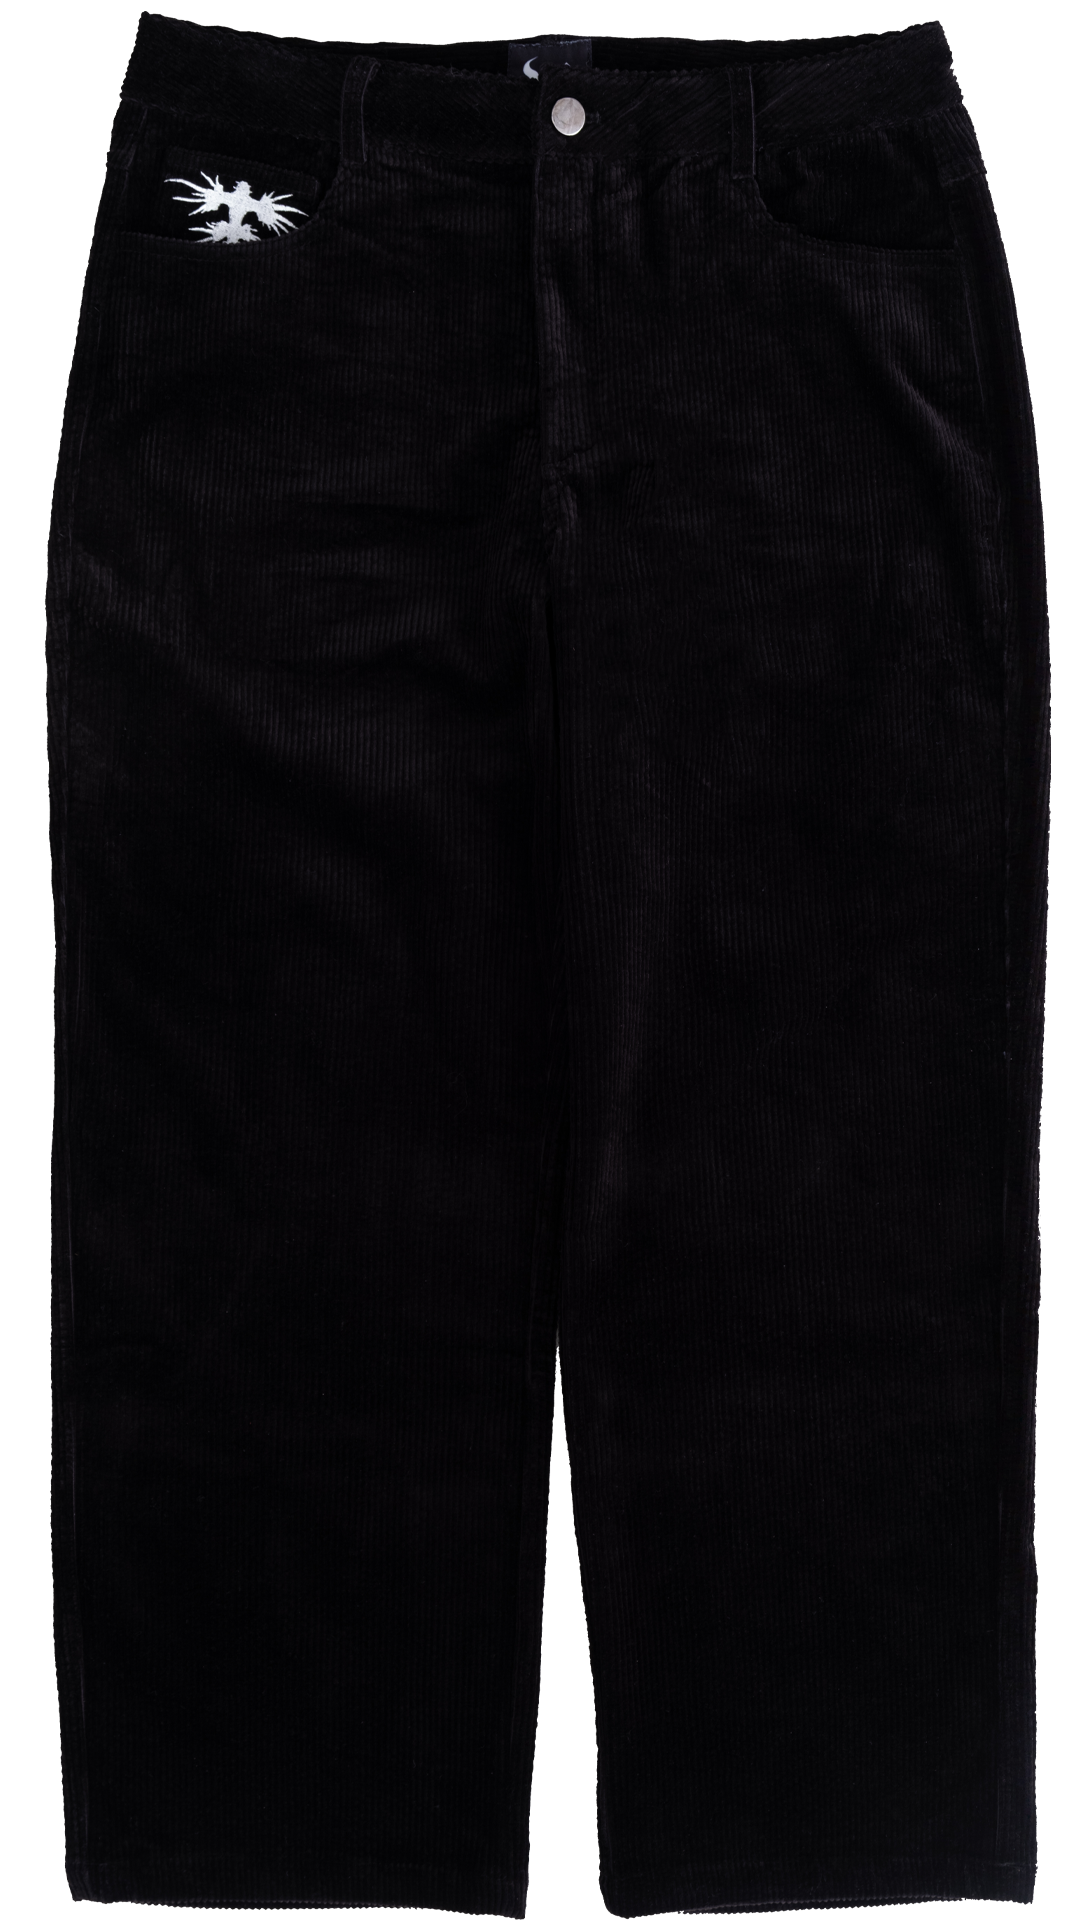 Black Corduroy Skate Pants – Wear Wojo